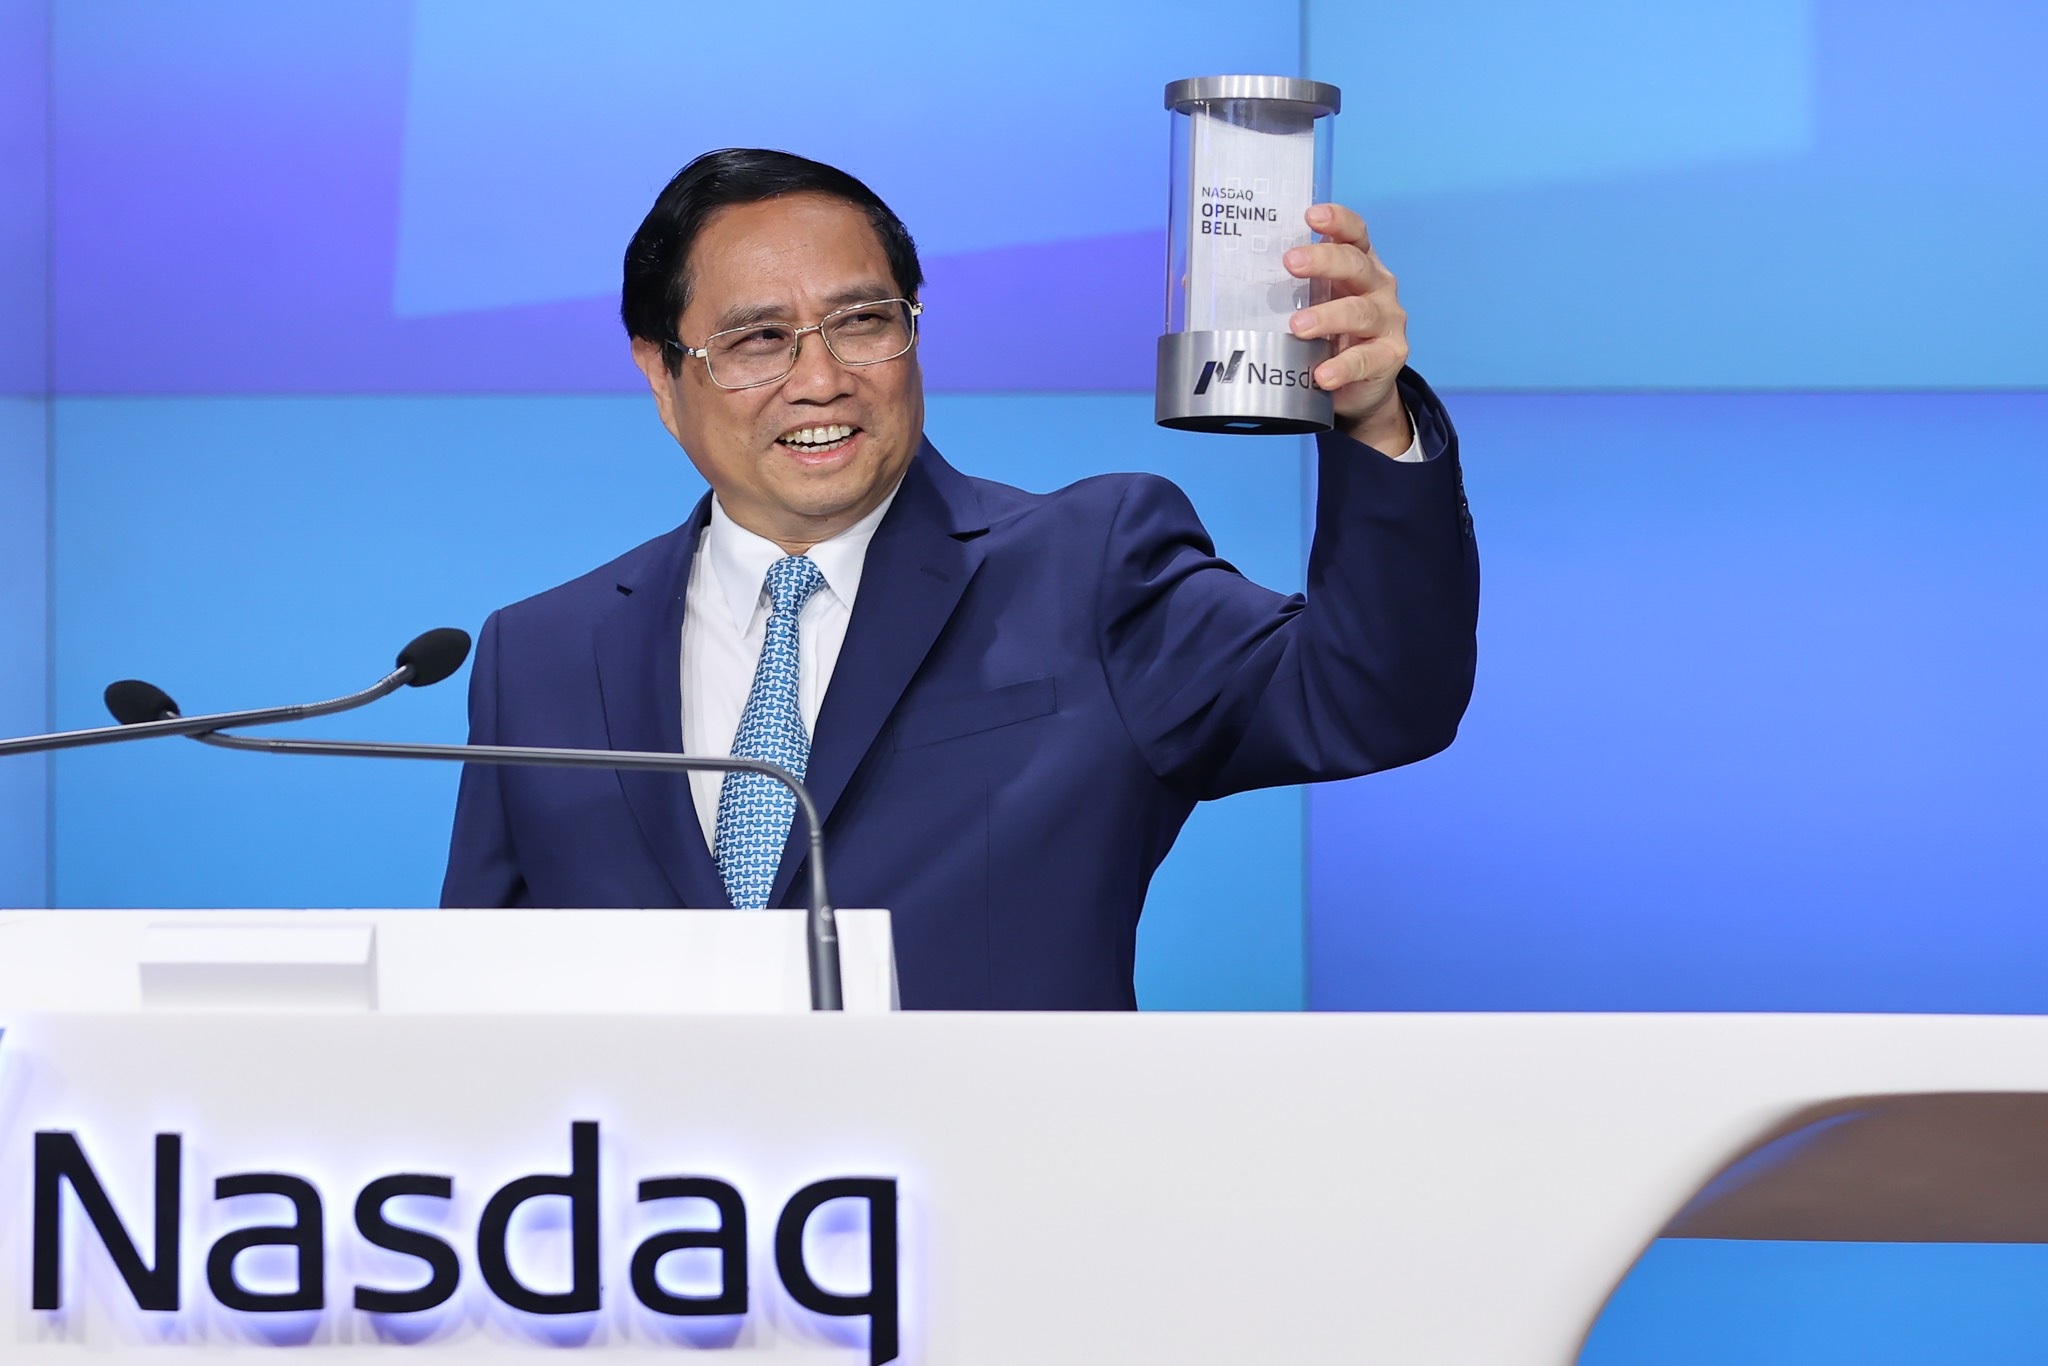 Thủ tướng rung chuông sàn chứng khoán NASDAQ - nơi Vinfast vừa niêm yết - 7